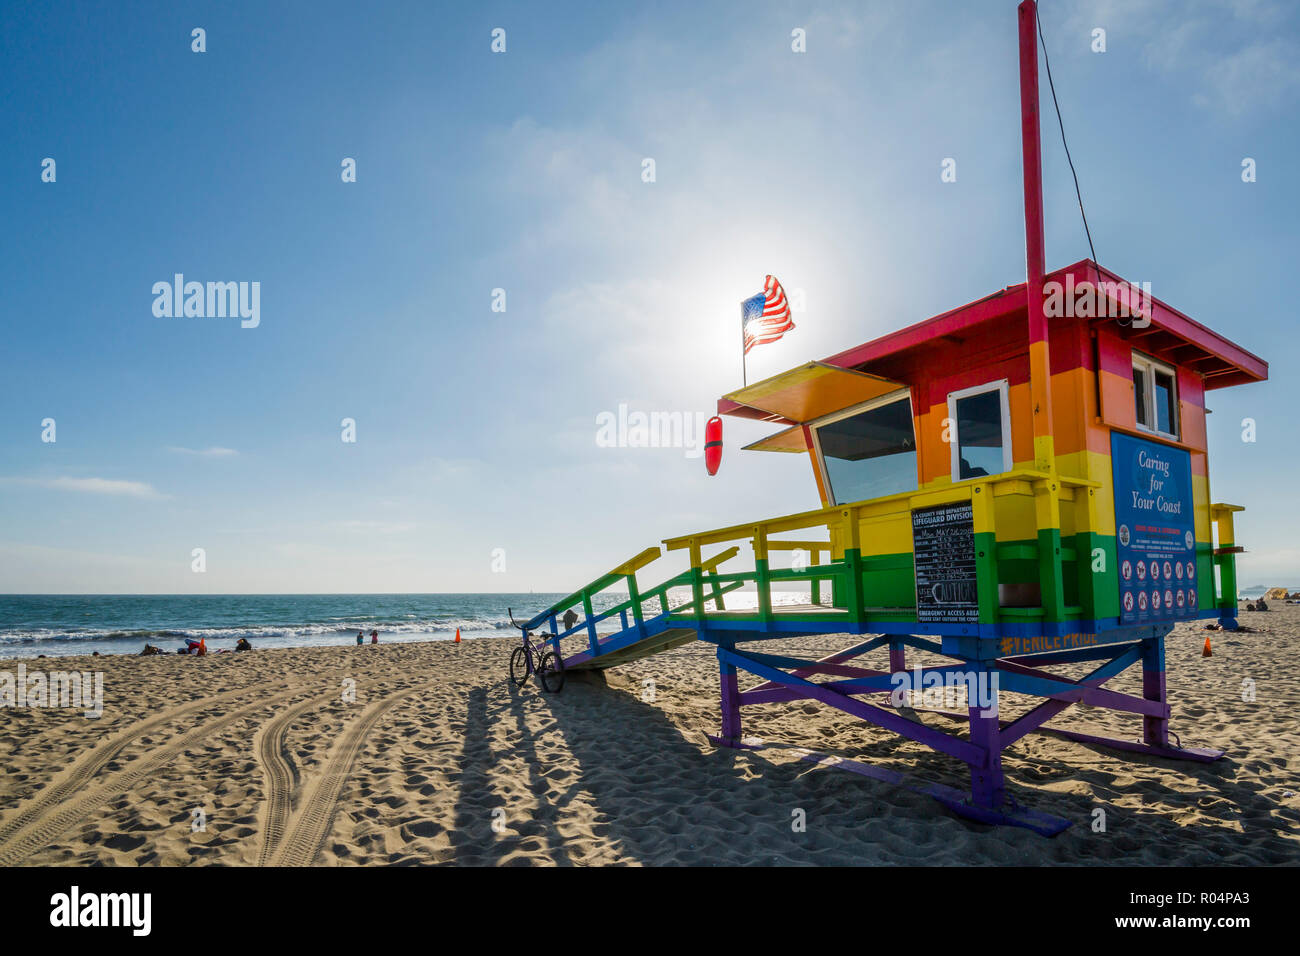 Ansicht der Rettungsschwimmer Wachturm auf der Venice Beach, Los Angeles, Kalifornien, Vereinigte Staaten von Amerika, Nordamerika Stockfoto